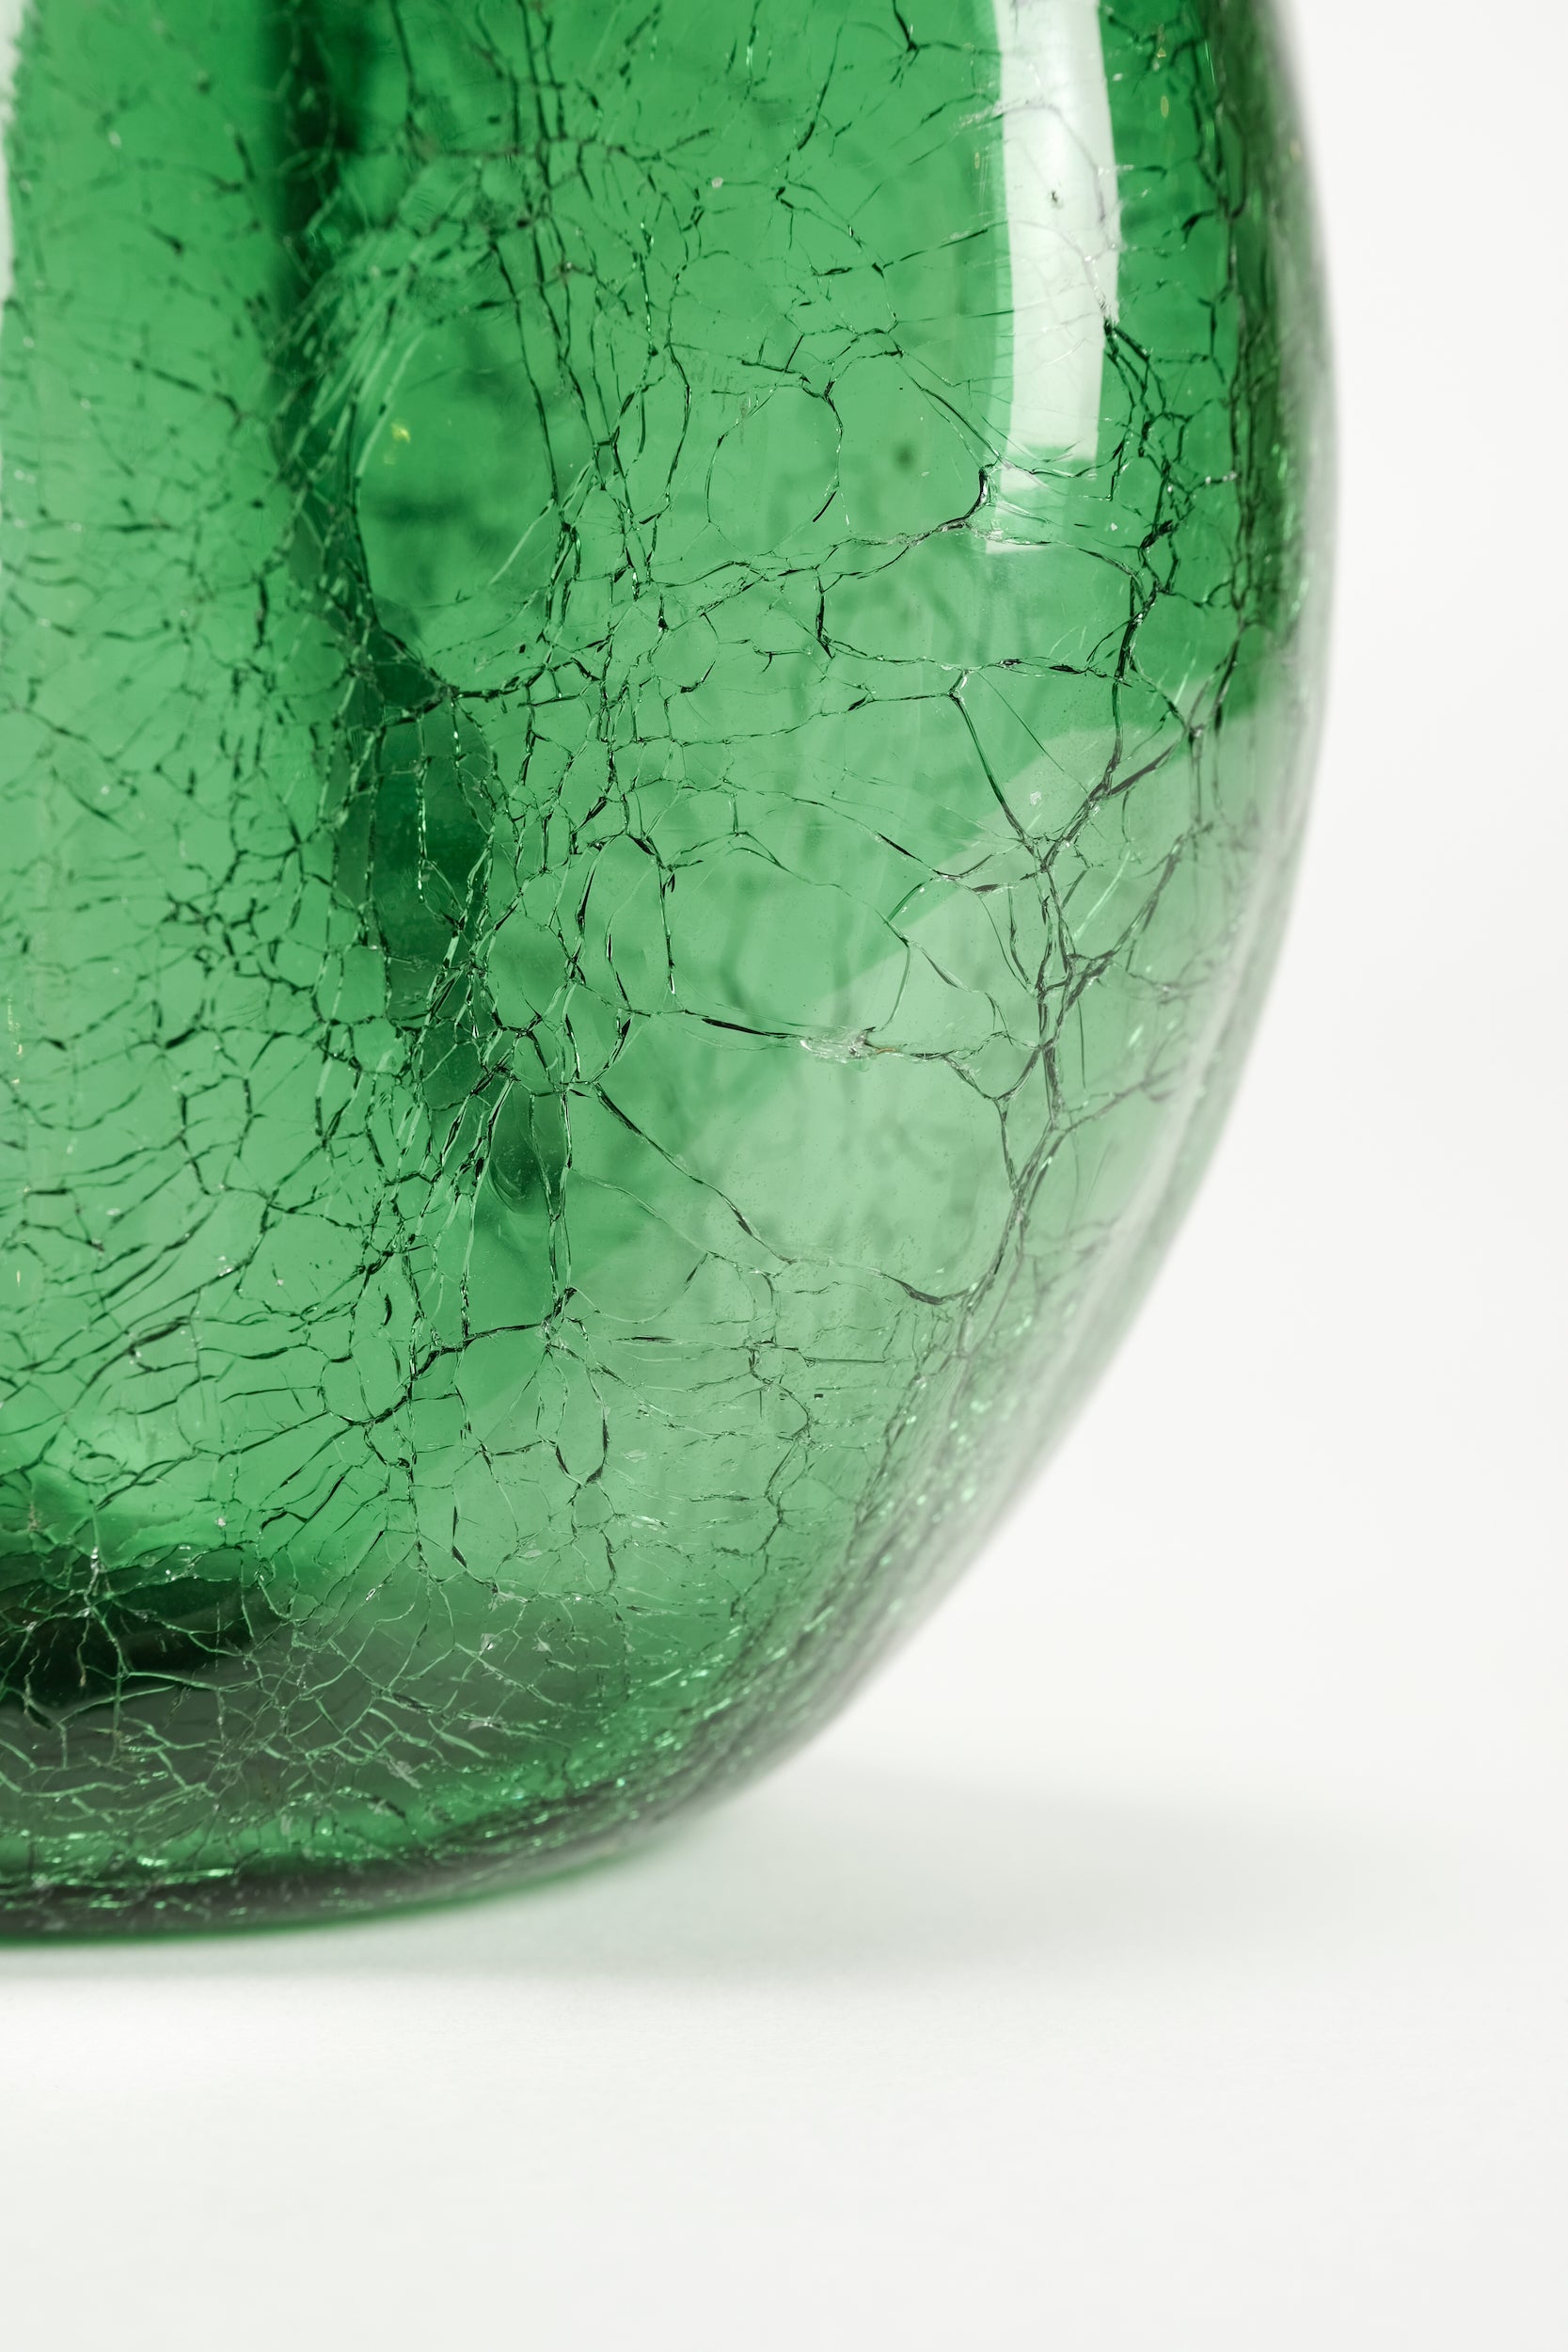 Empoli Vase mit Craquelé Glas, Italien, 50er